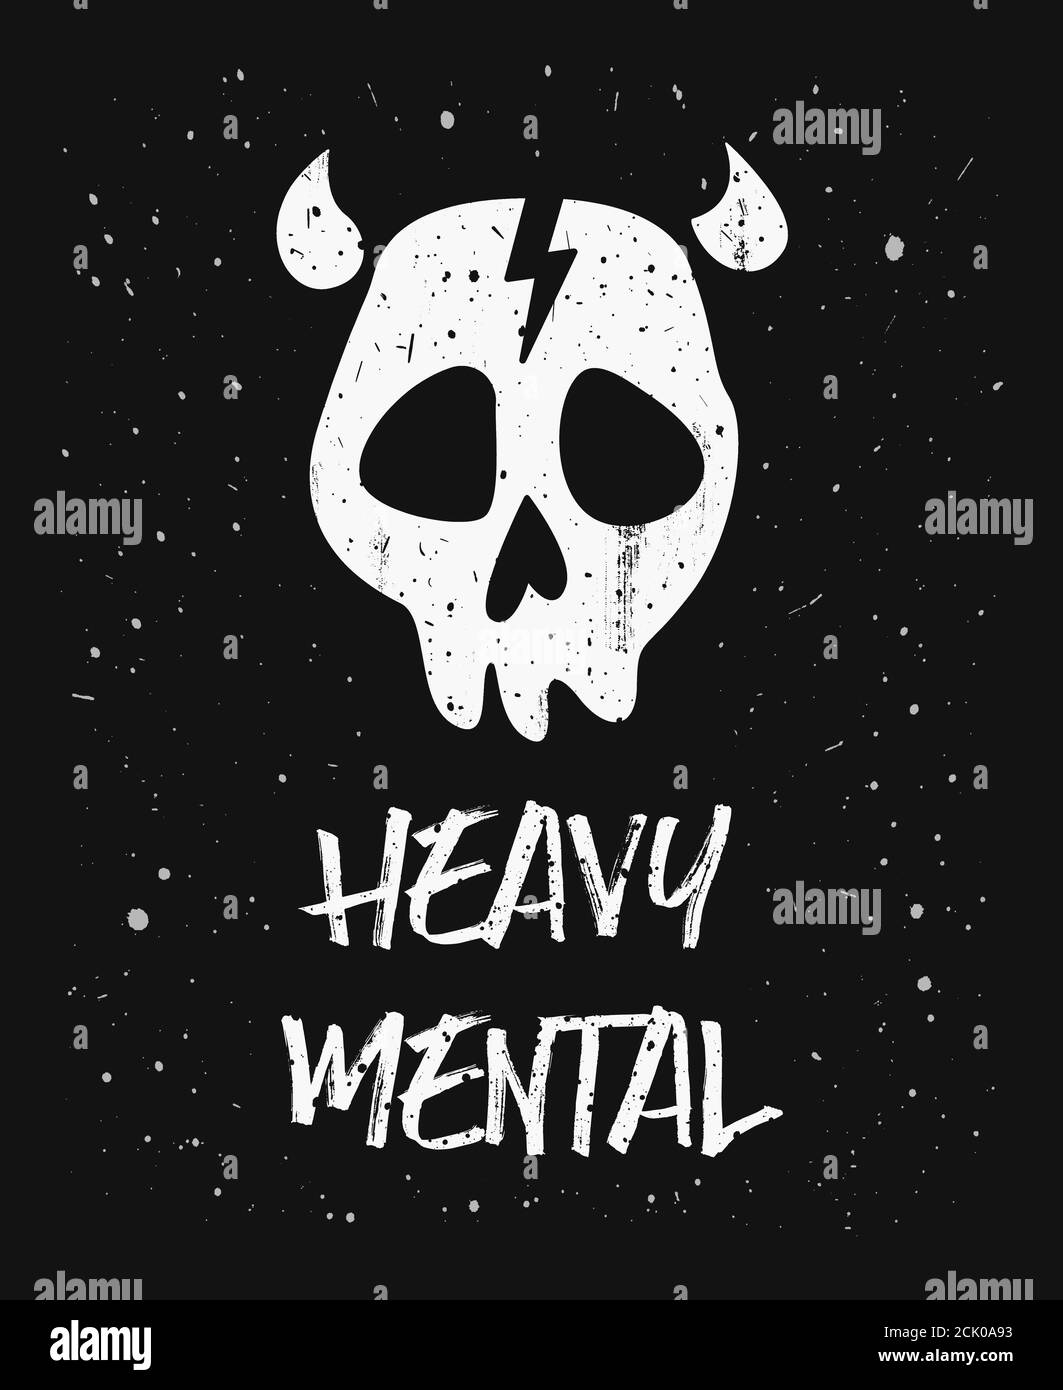 Schweres mentales, trendiges Textkunstdesign zum Drucken, ein Totenkopf-Symbol mit Hörnern und Blitzzeichen auf der Stirn. Gruselige Illustration für Metal und Rock mu Stockfoto